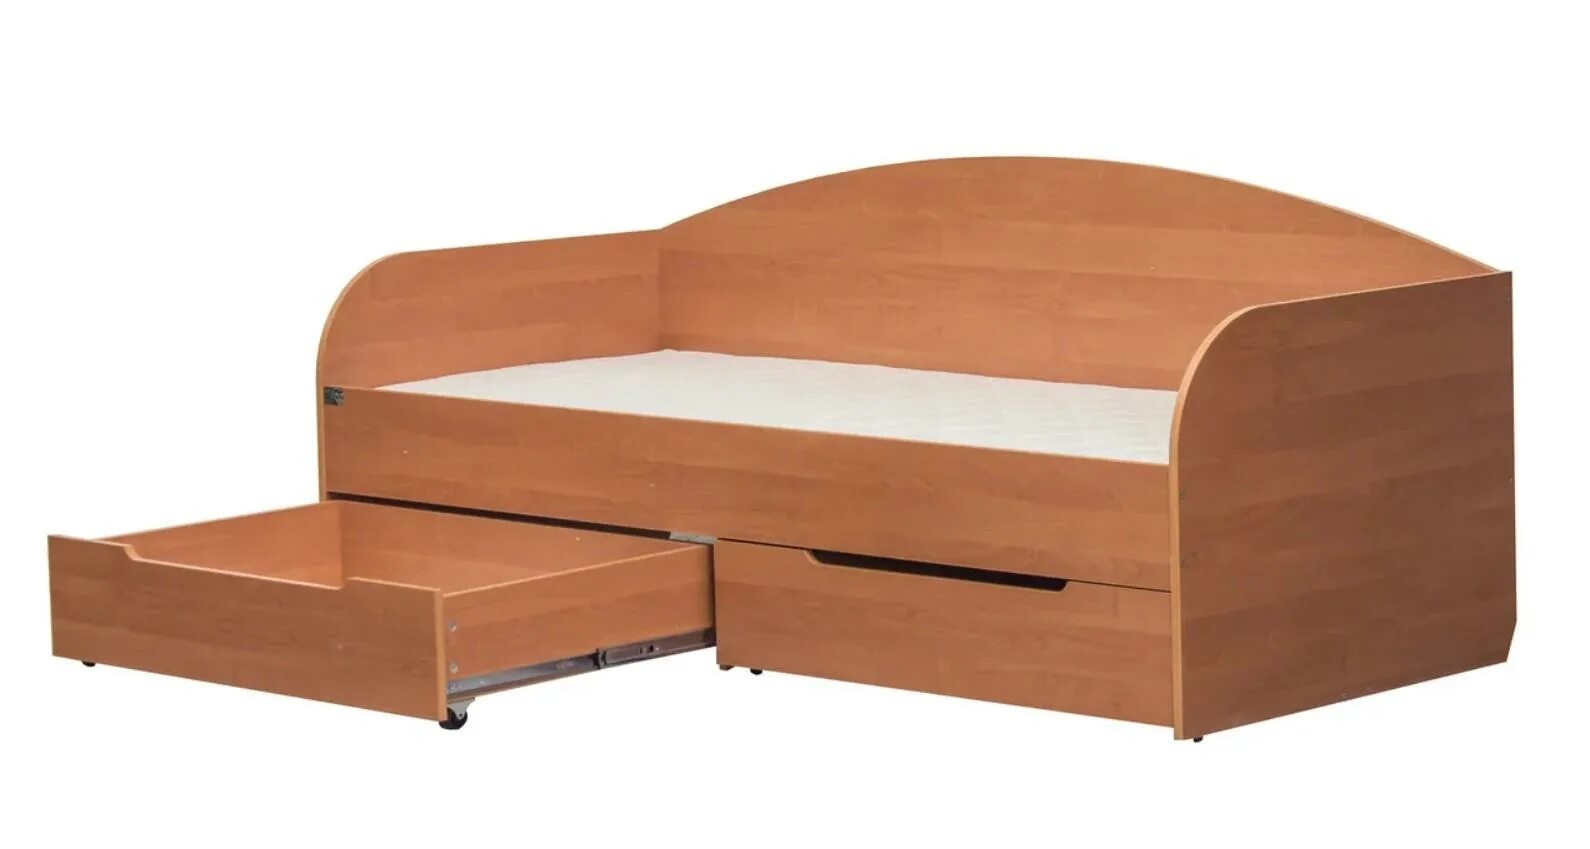 Кровать односпальная 90.2 90 х 200 см с ящиками. Кровать односпальная детская. Кровать детская ЛДСП. Ящики для кровати односпальной. Бравал с ящиками